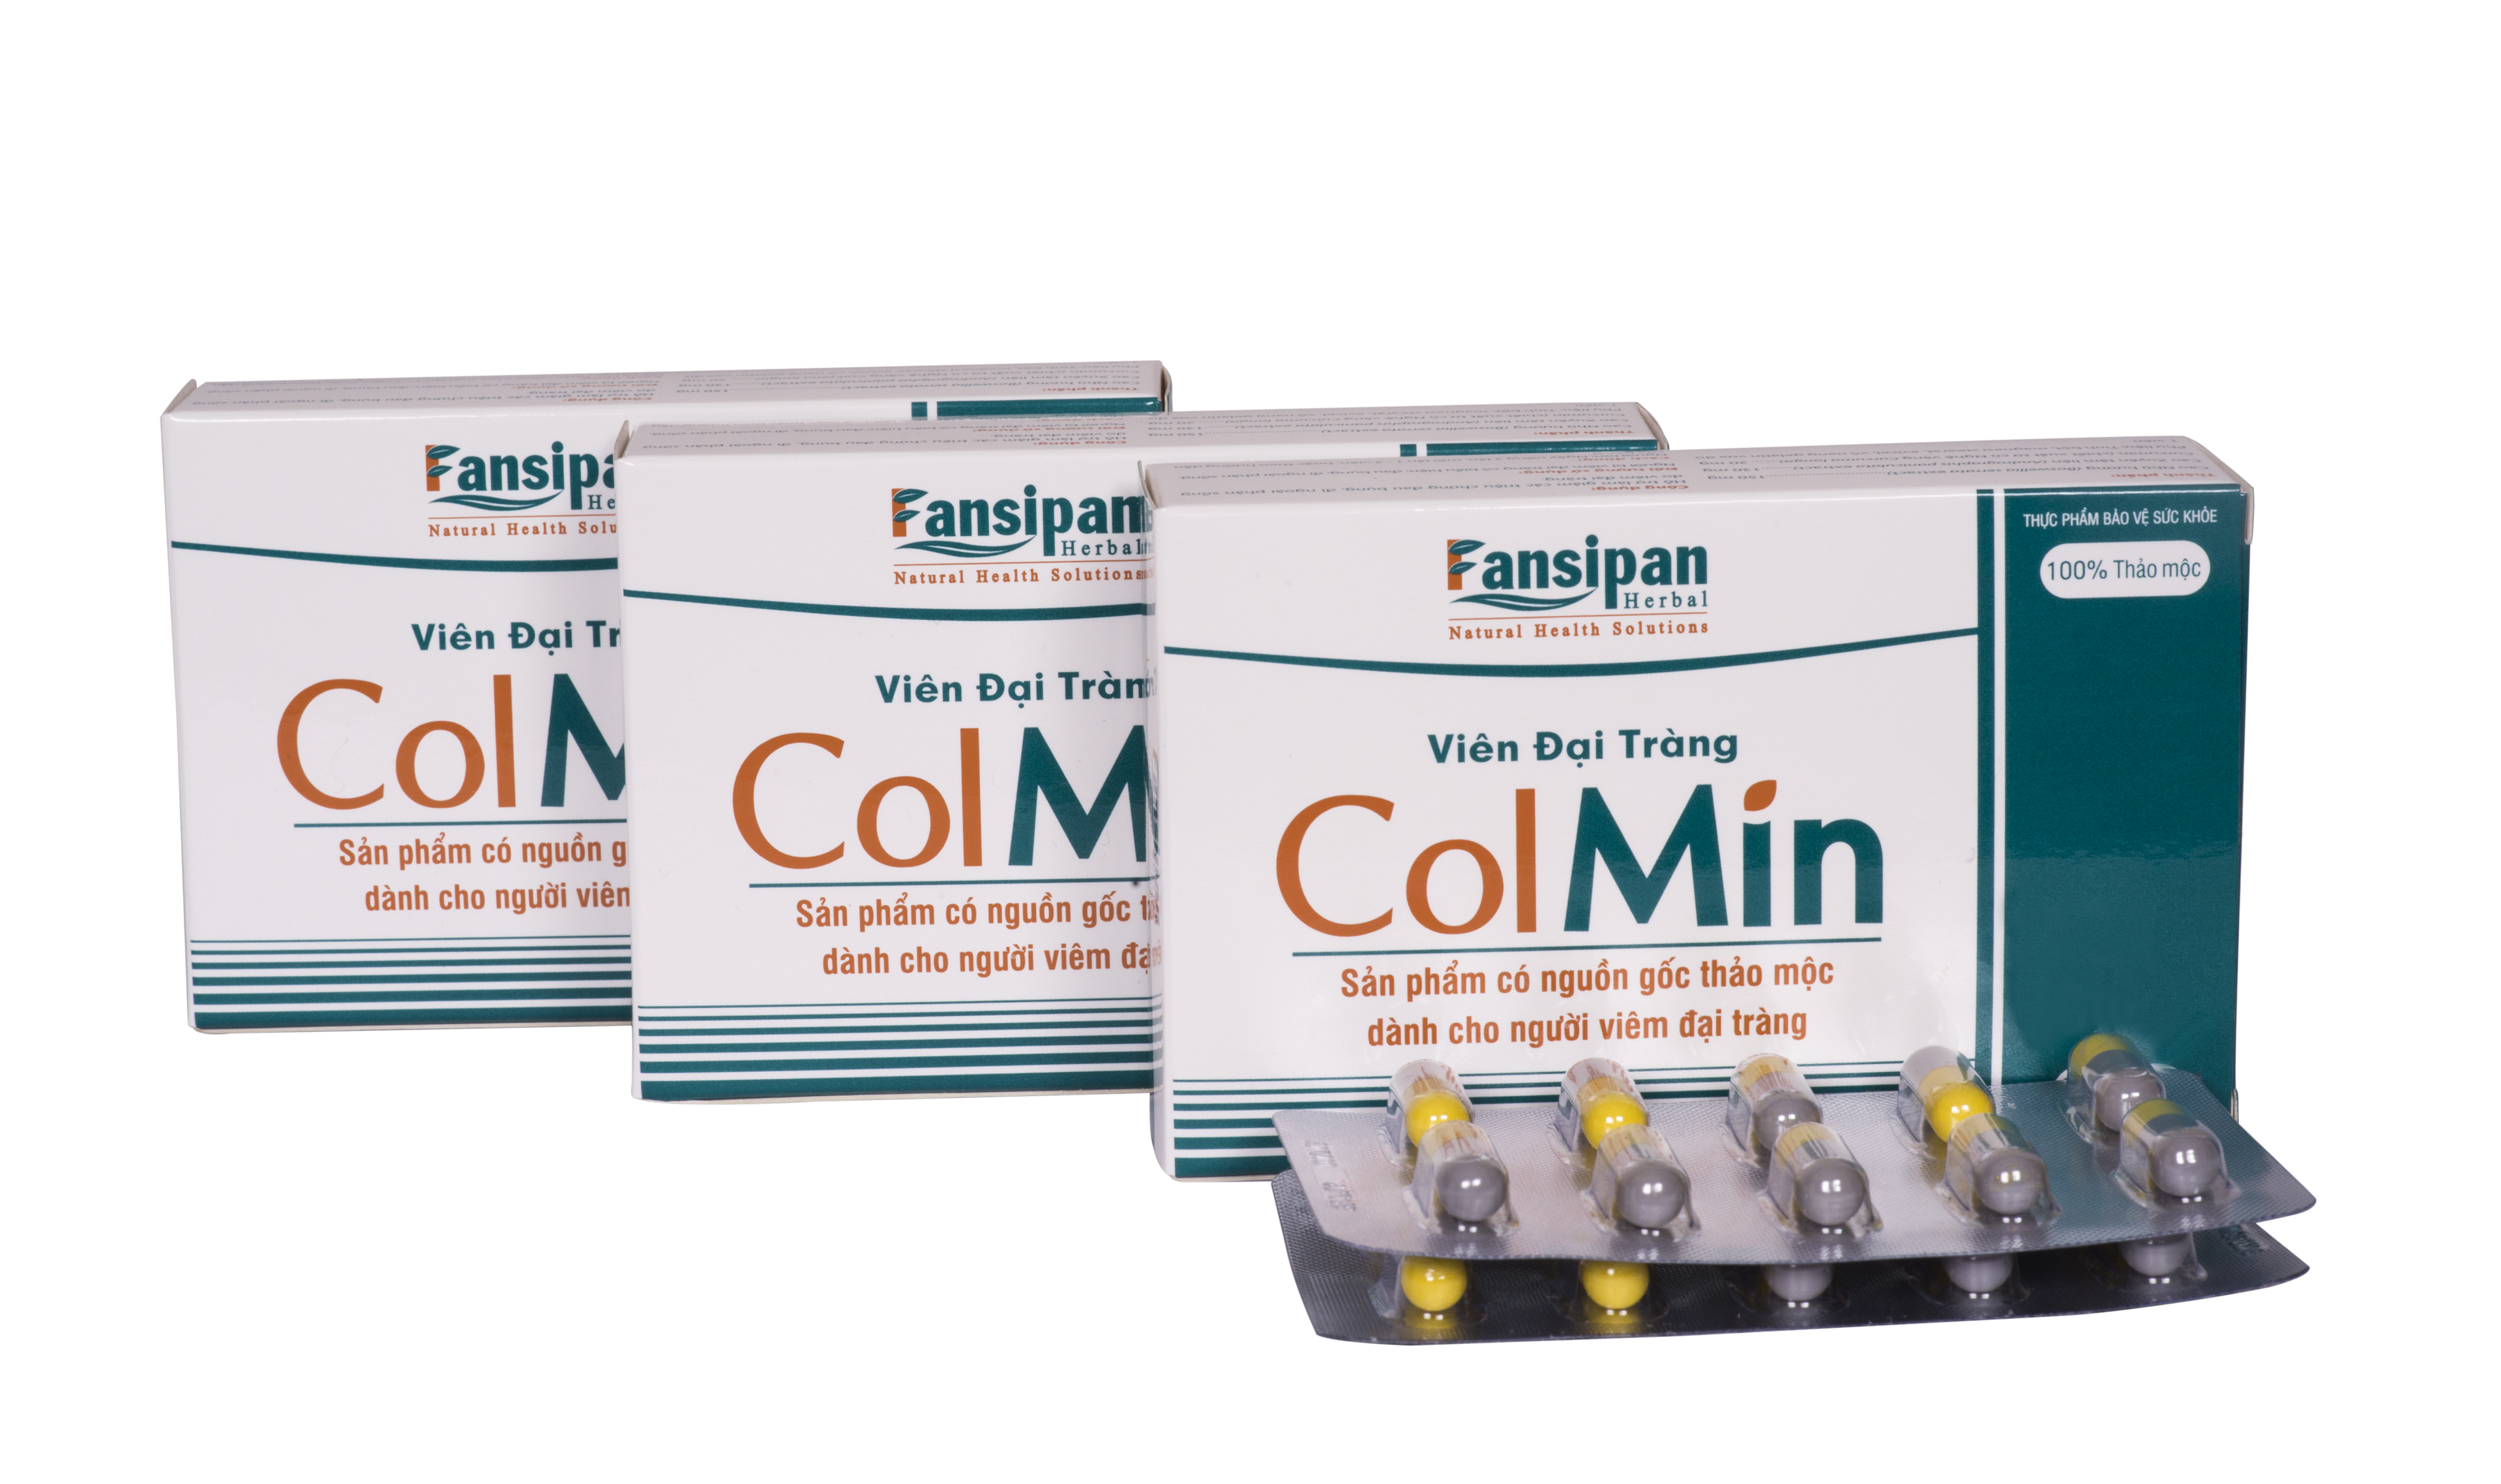 Viên Đại Tràng Colmin giải pháp đặc hiệu cho bệnh đại tràng 2.